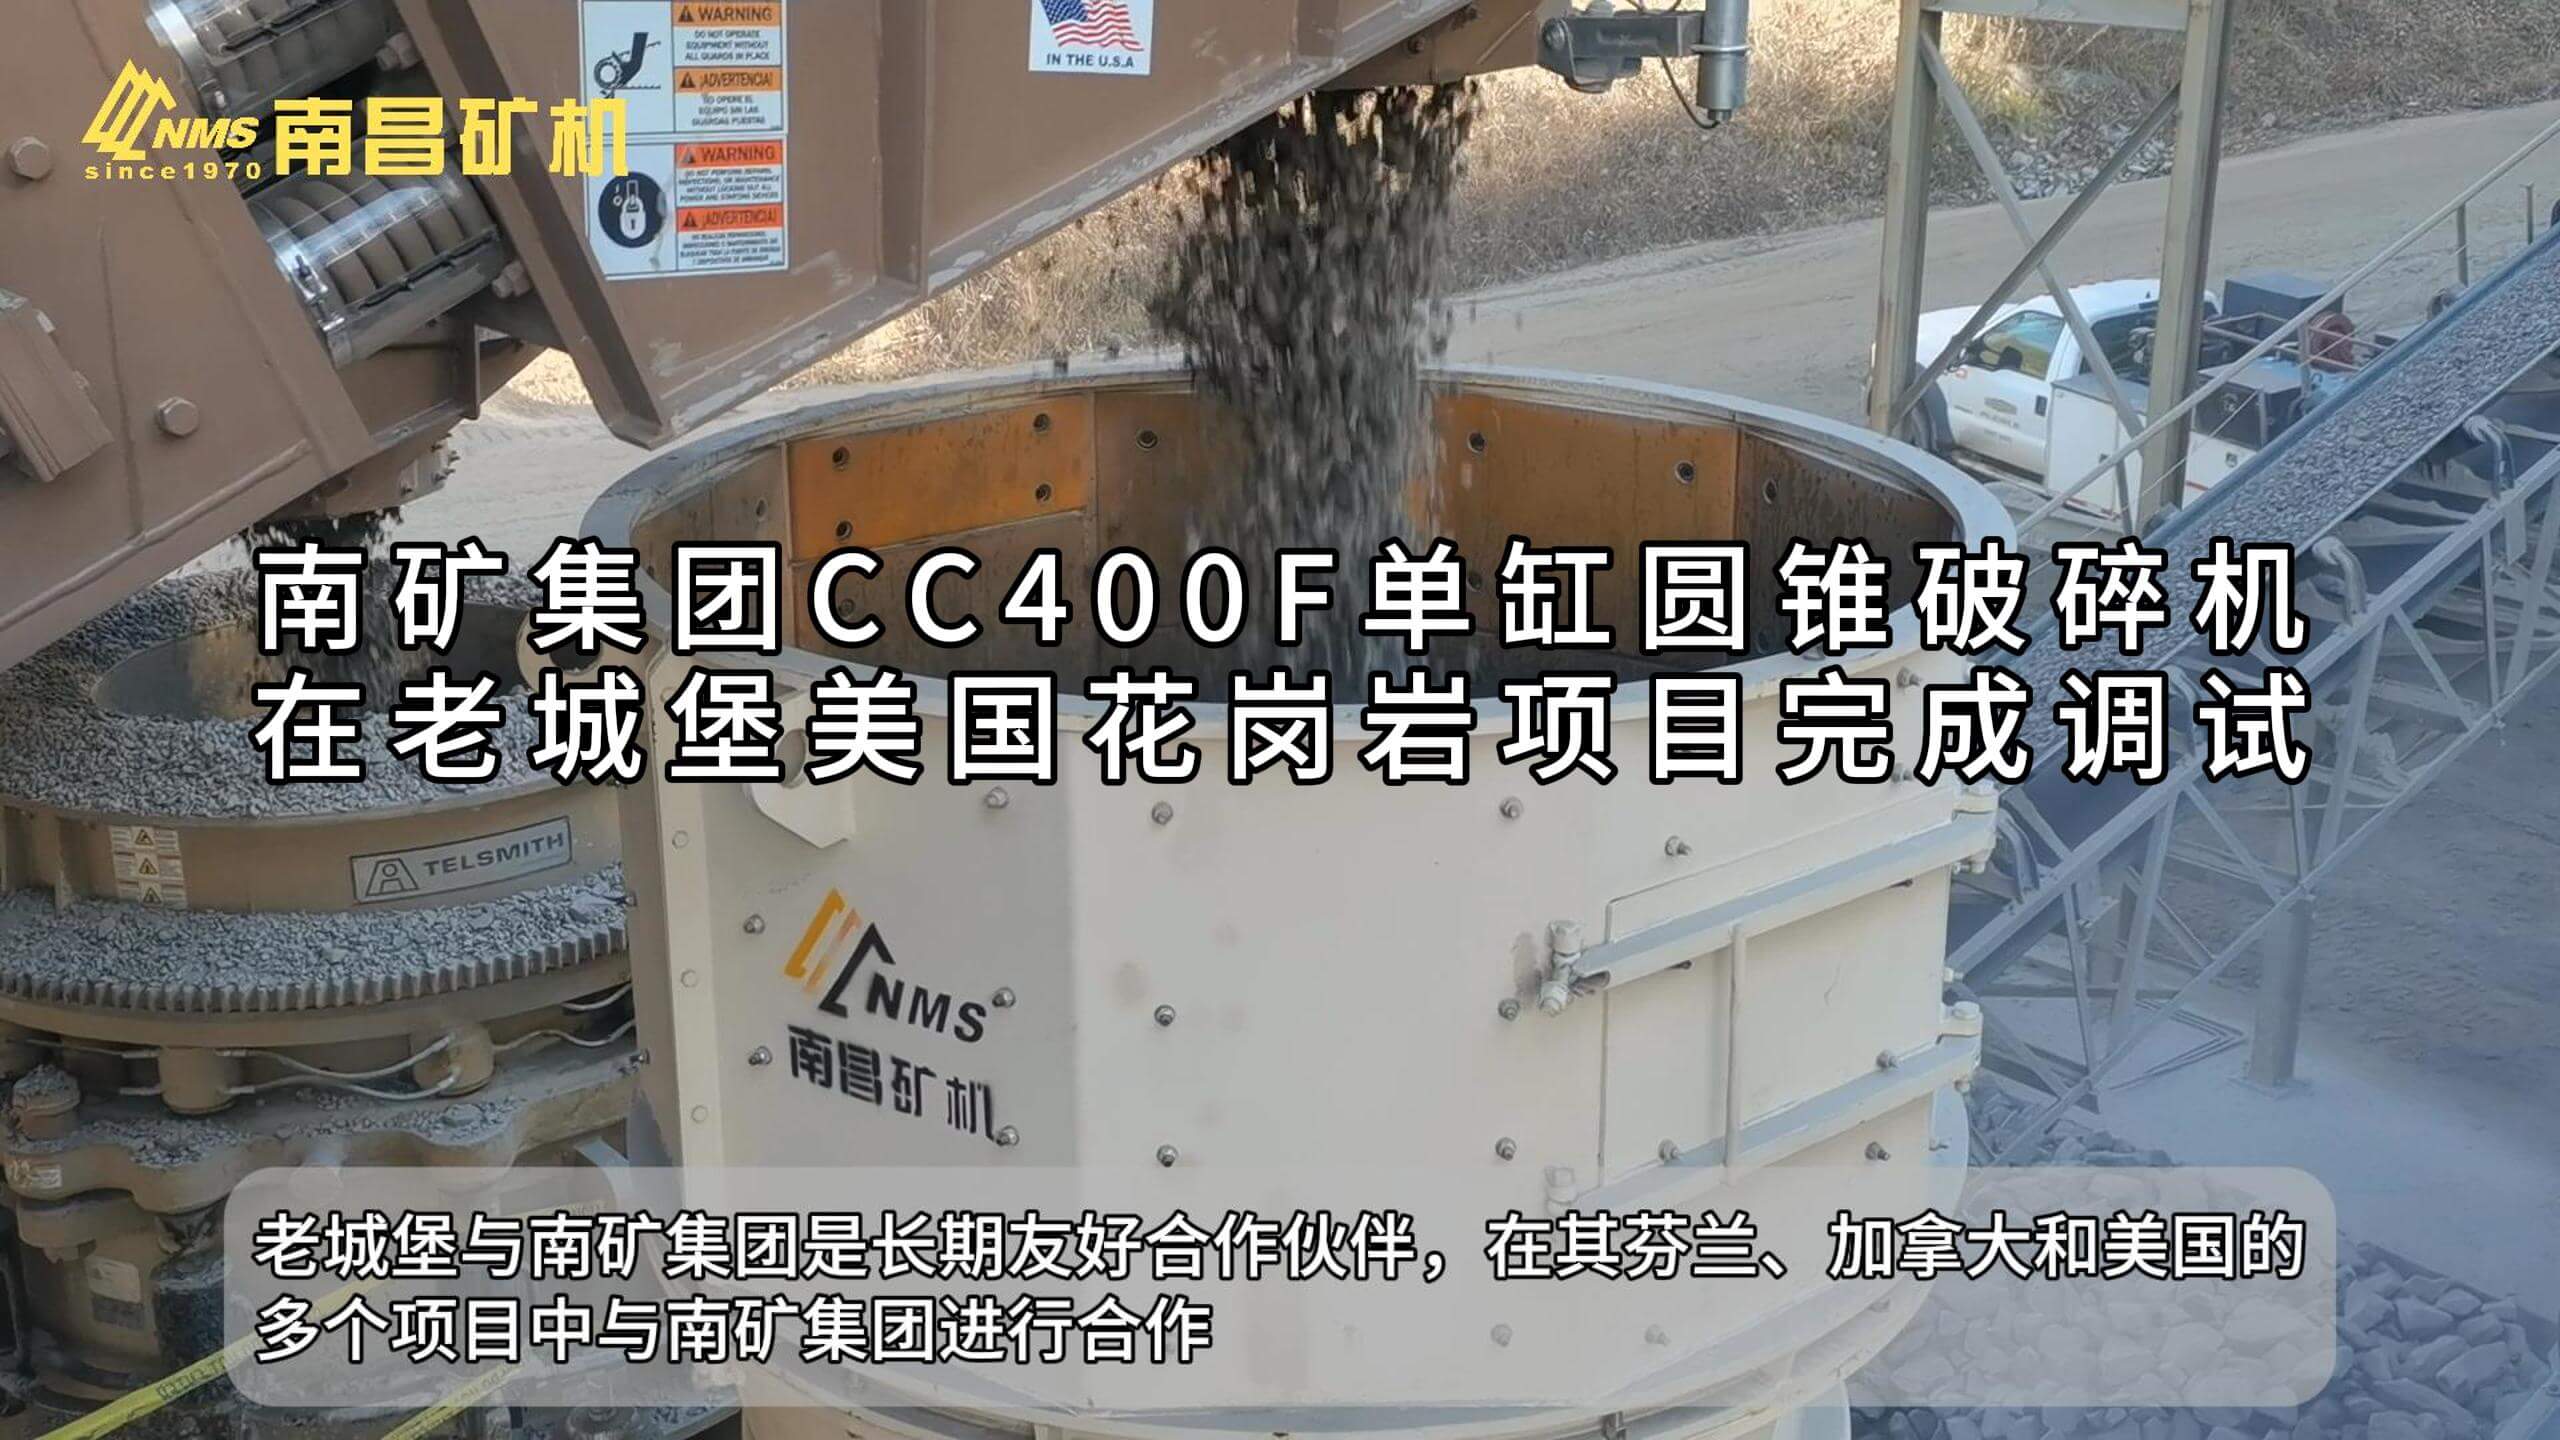 南矿集团CC400F单缸圆锥破碎机在老城堡美国花岗岩项目完成调试